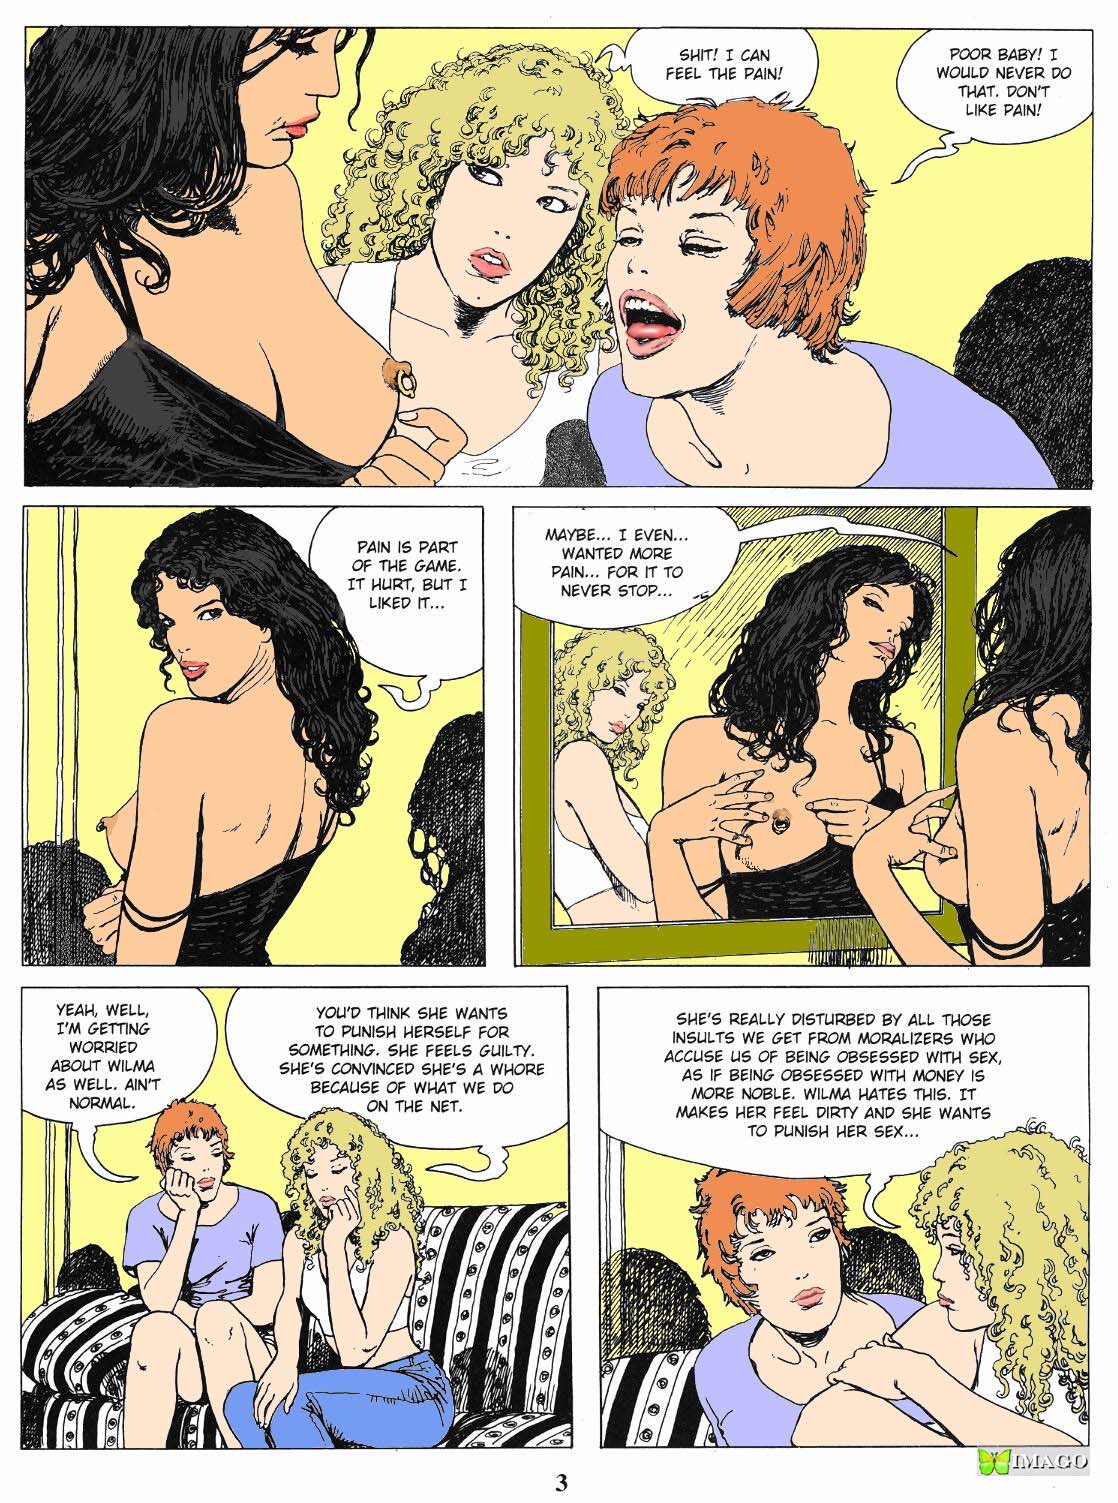 Piercing porn comics